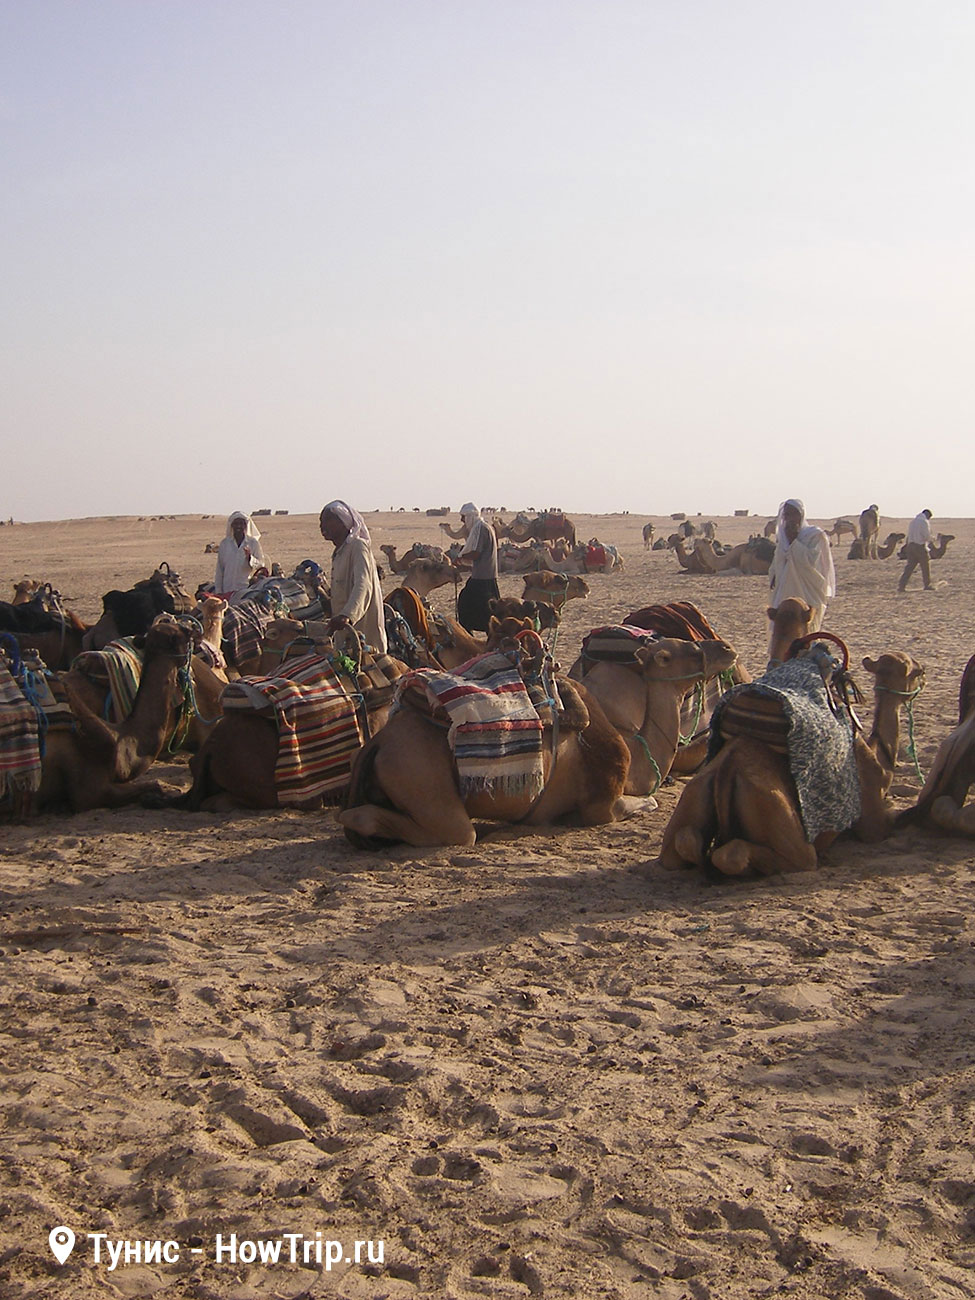 Тунис экскурсия на верблюдах